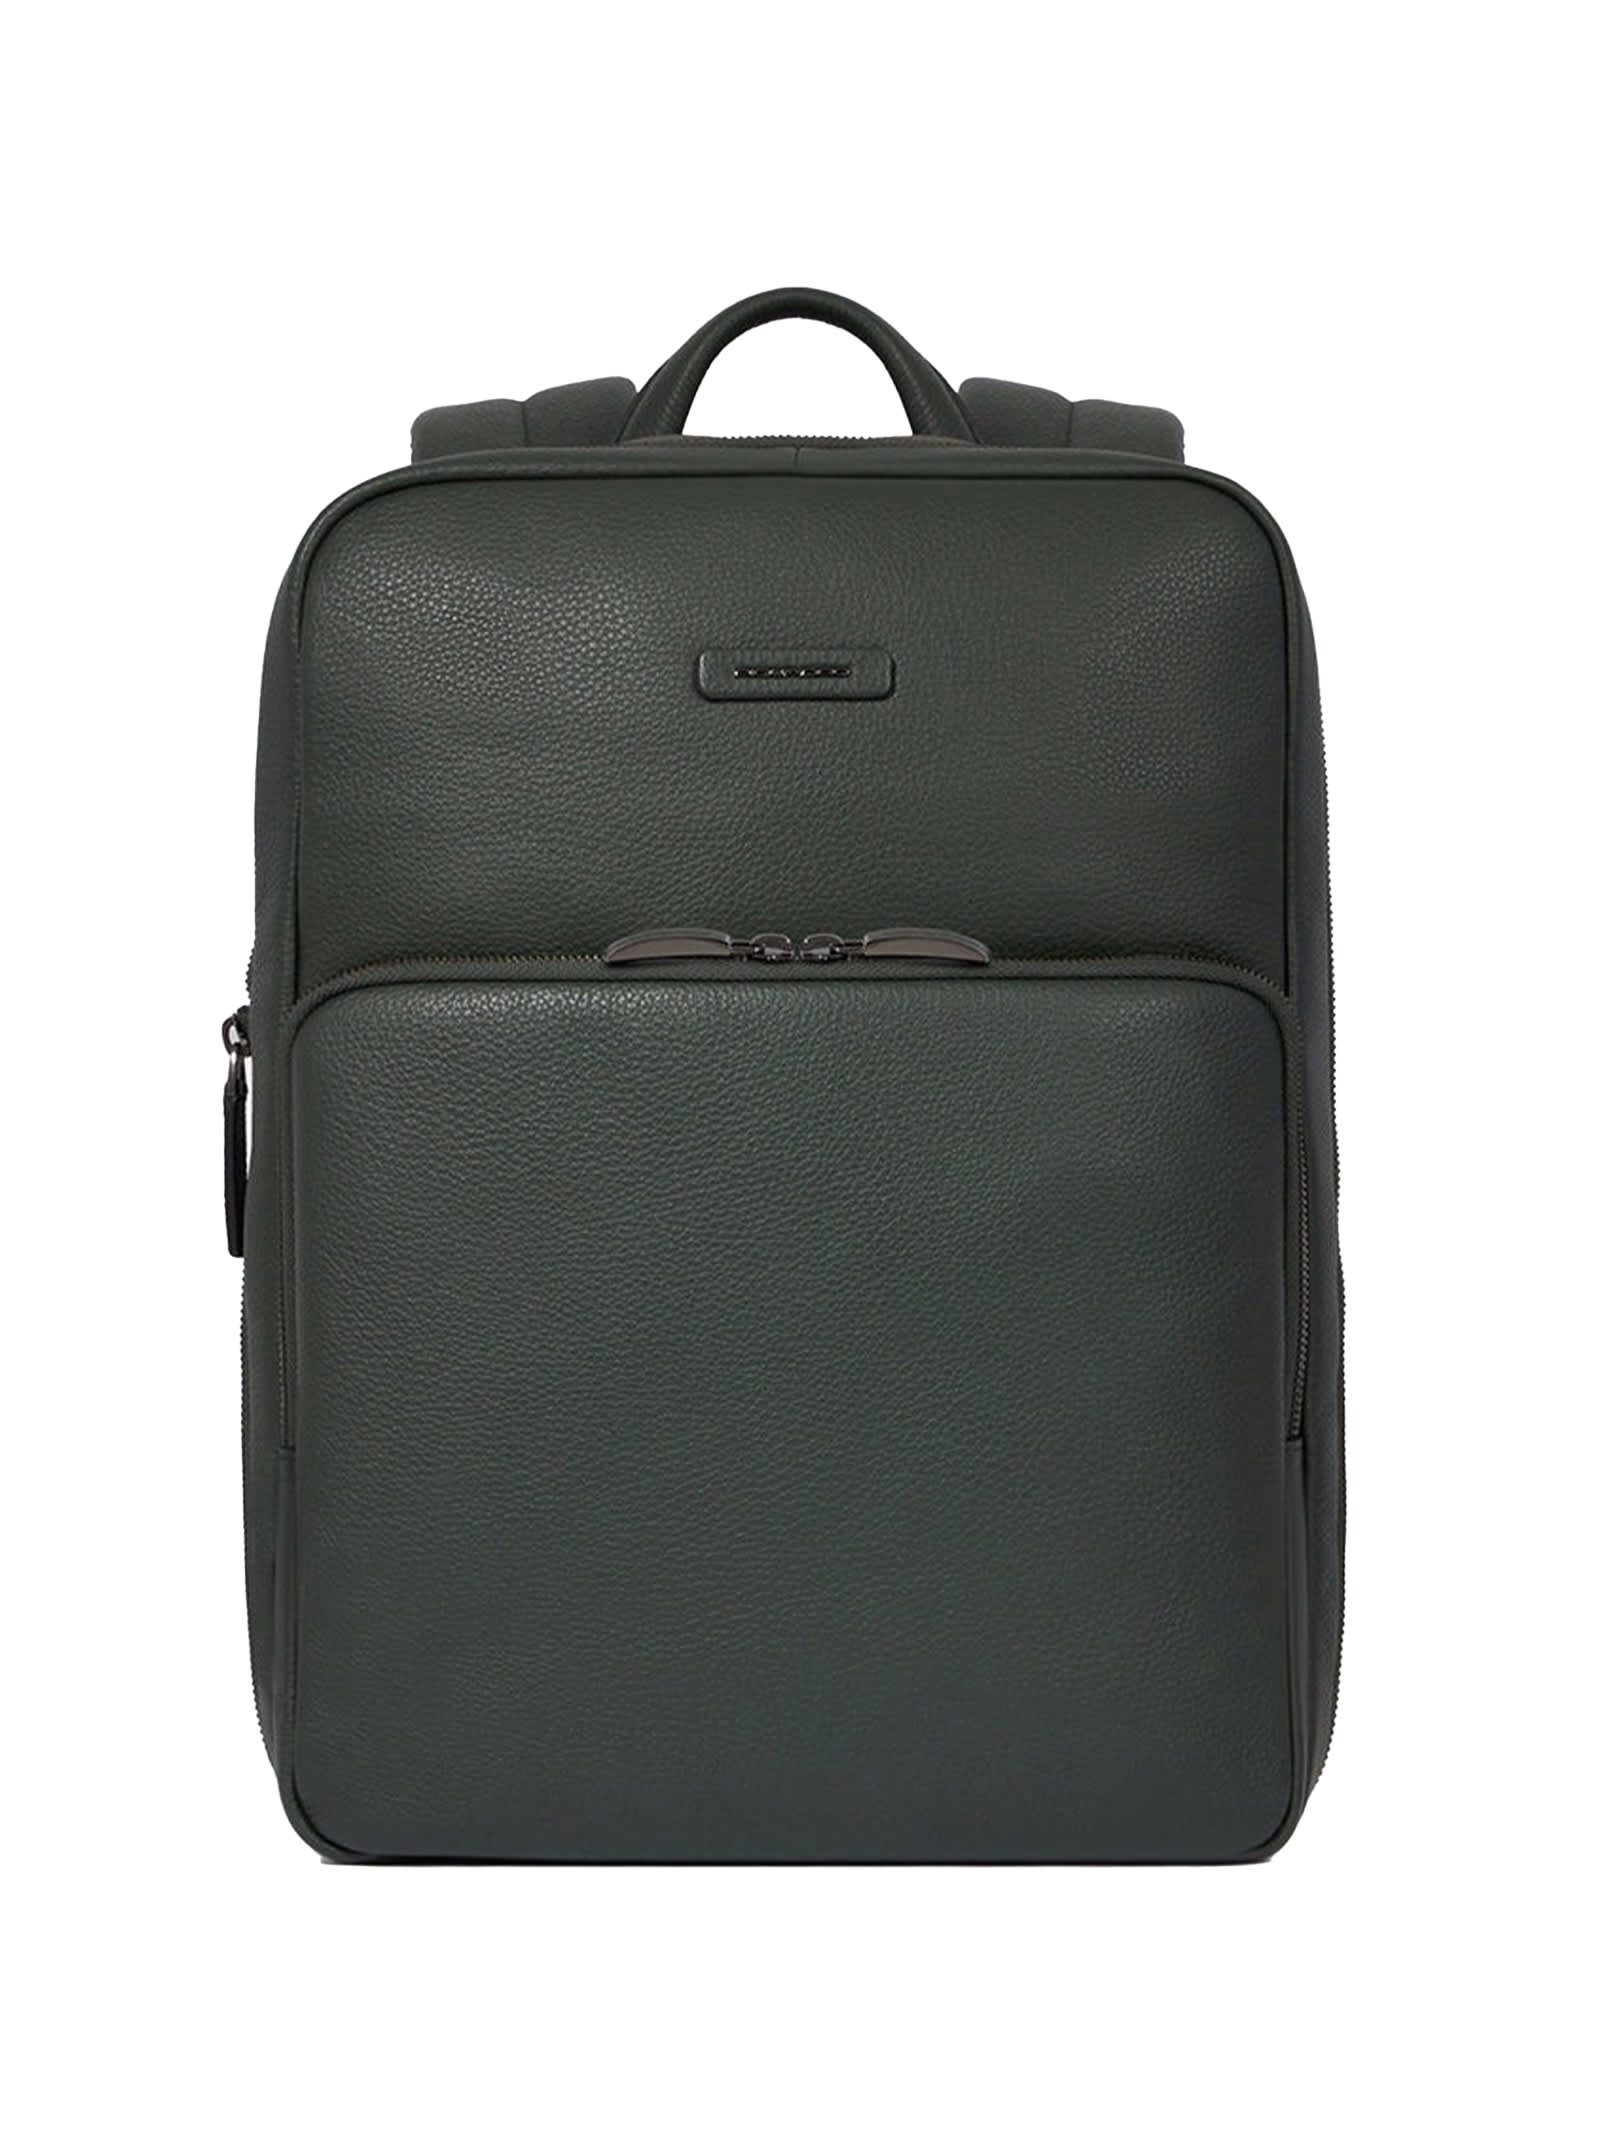 Slim 14 Laptop Backpack